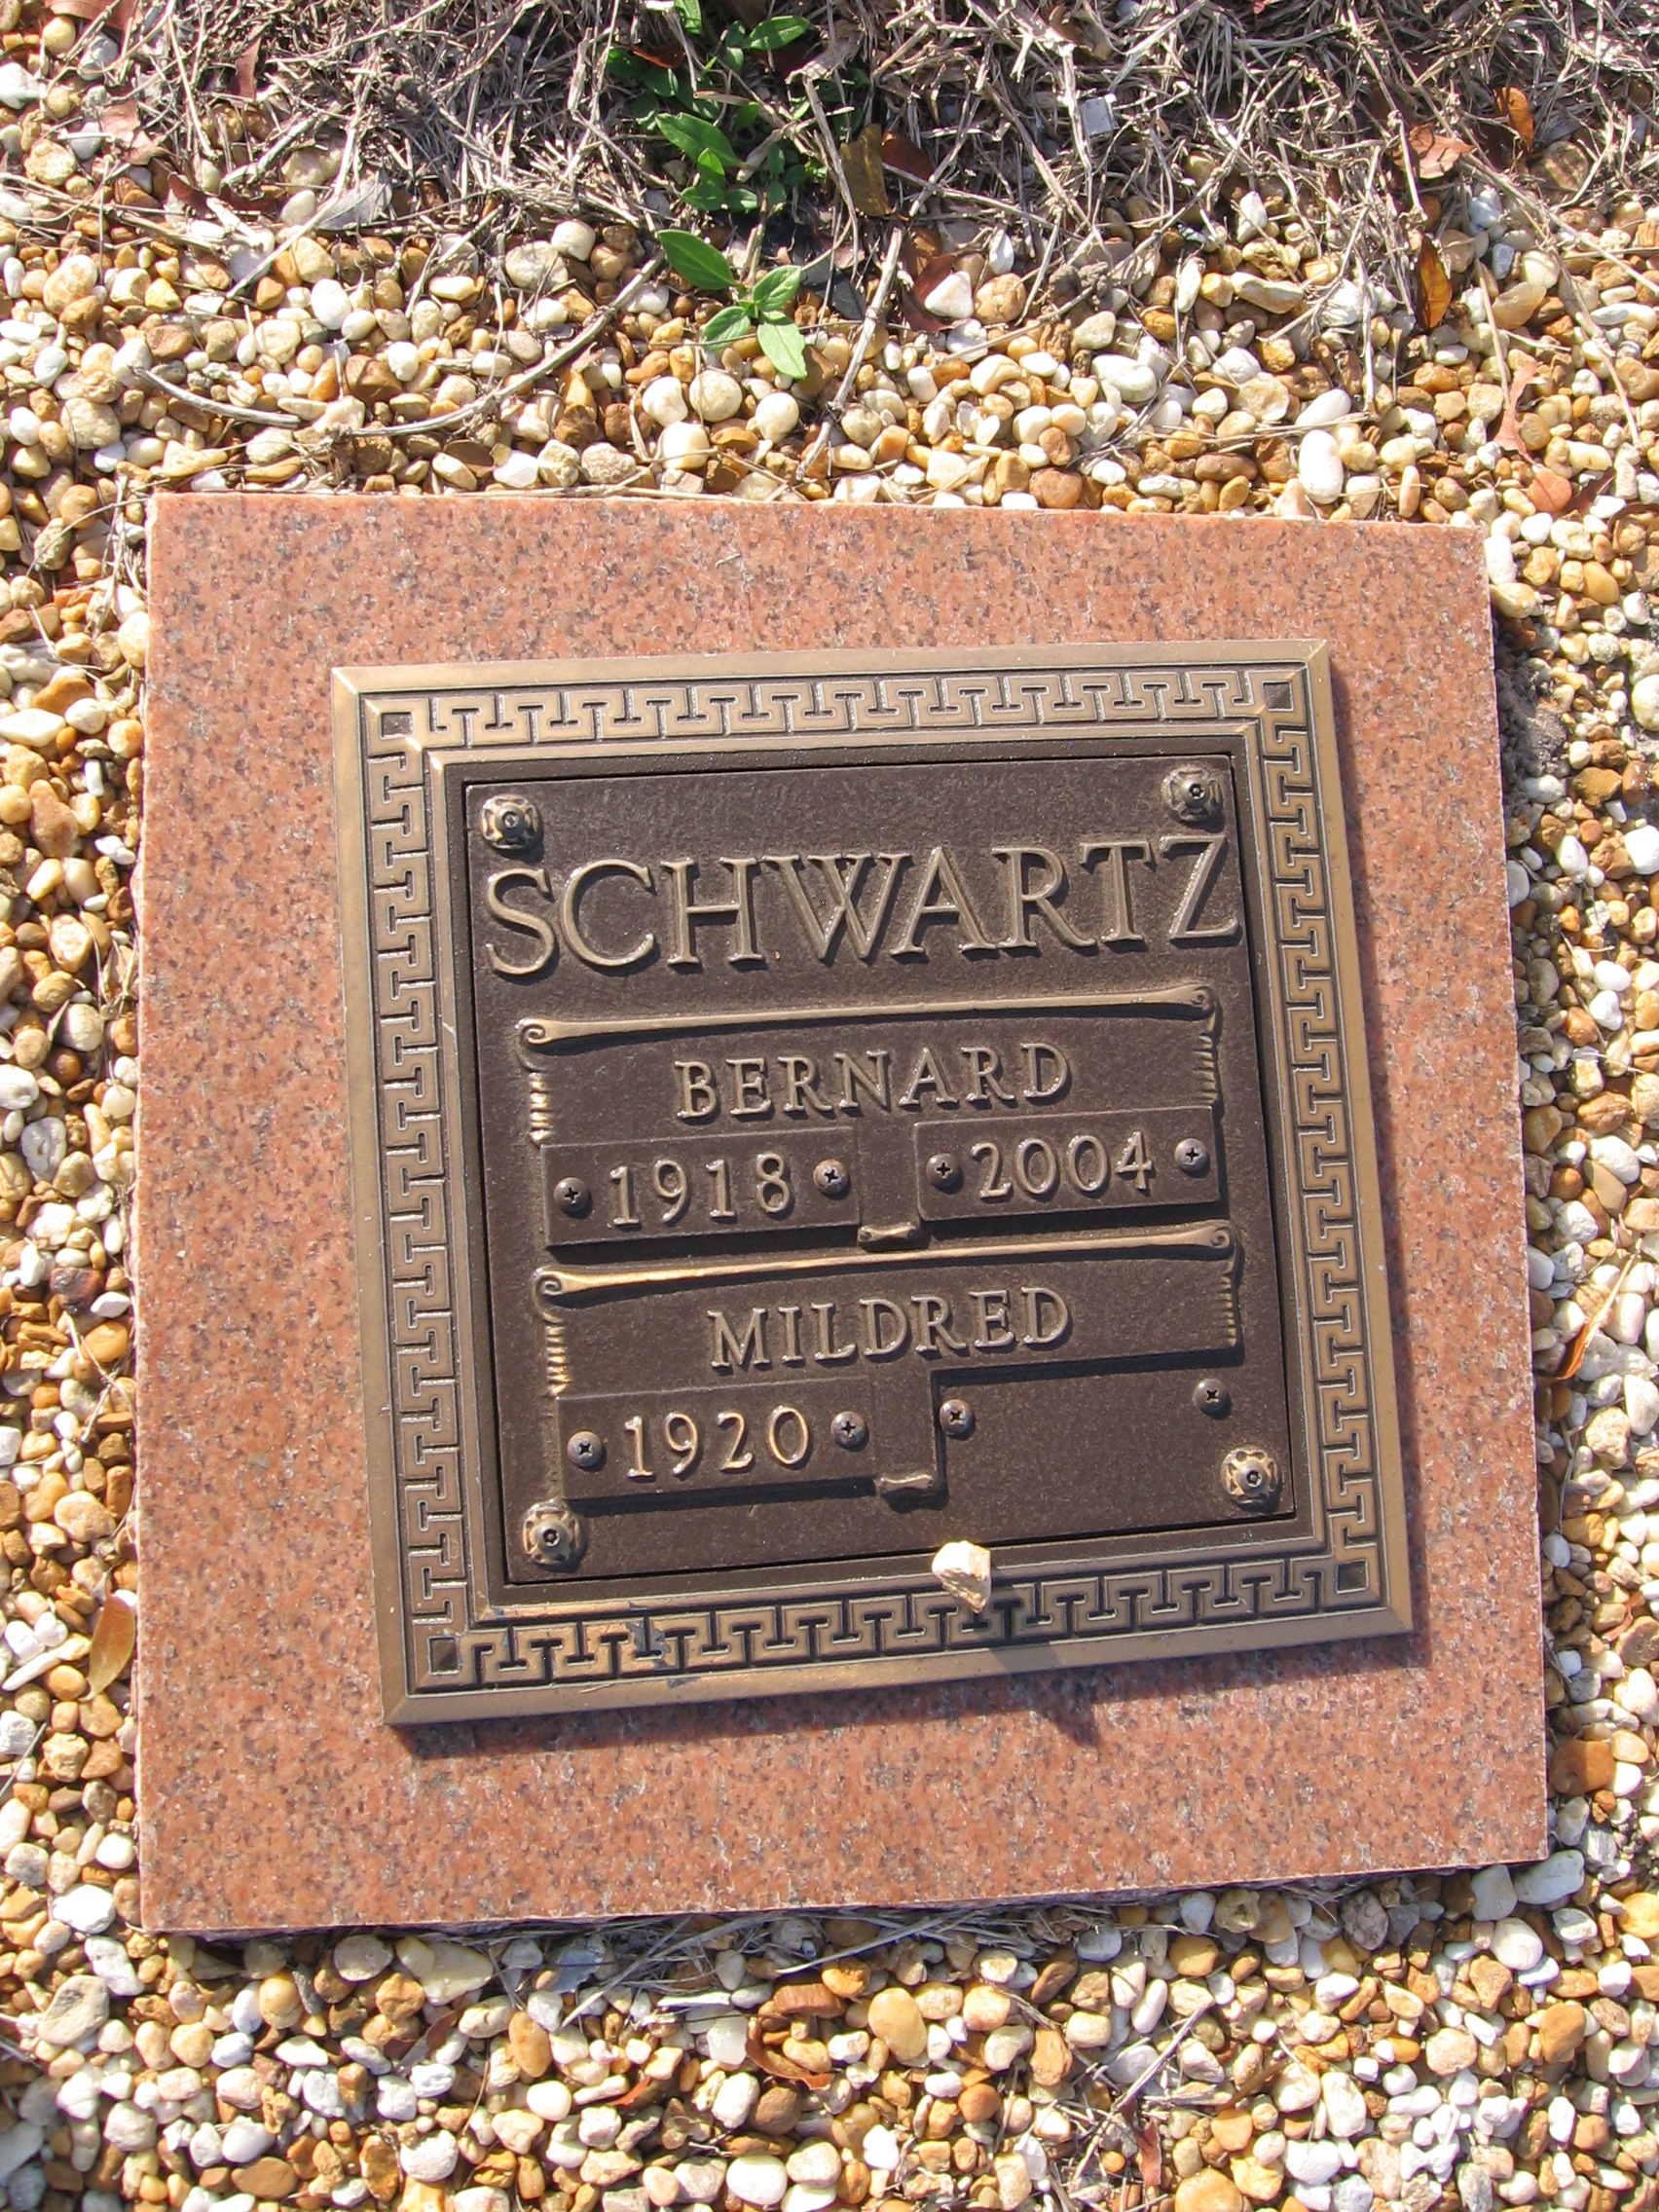 Bernard Schwartz